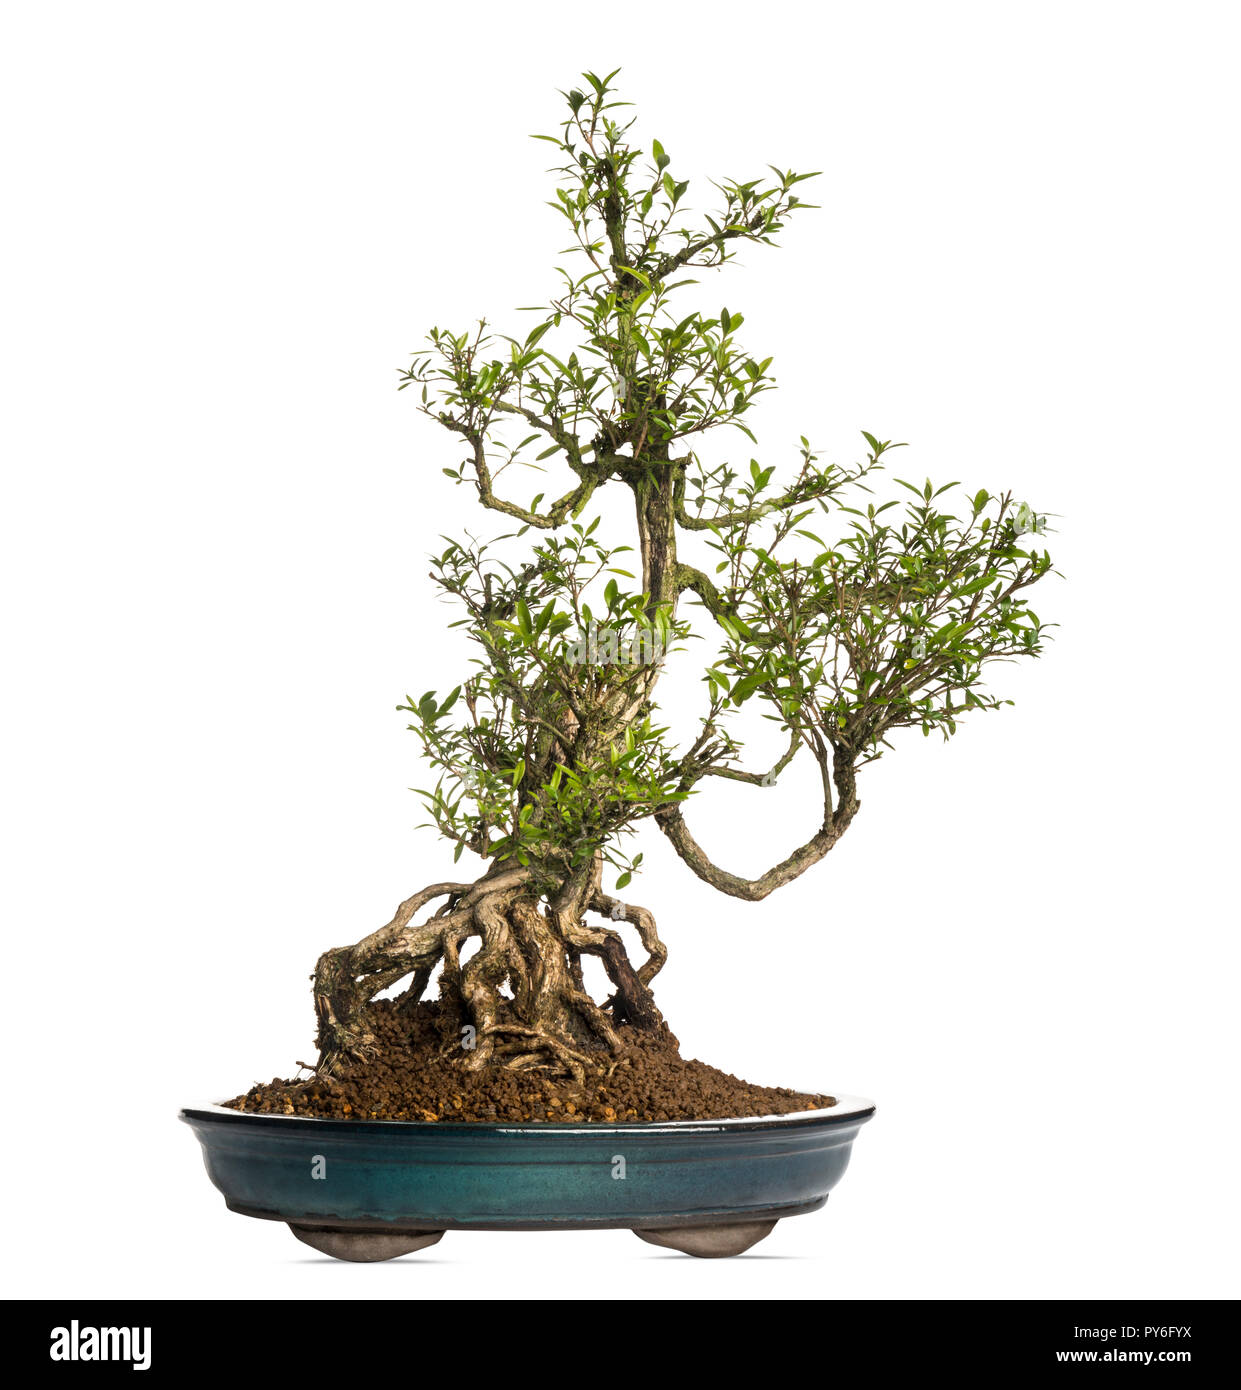 Serissa bonsai tree, Serissa foetida, isolated on white Stock Photo